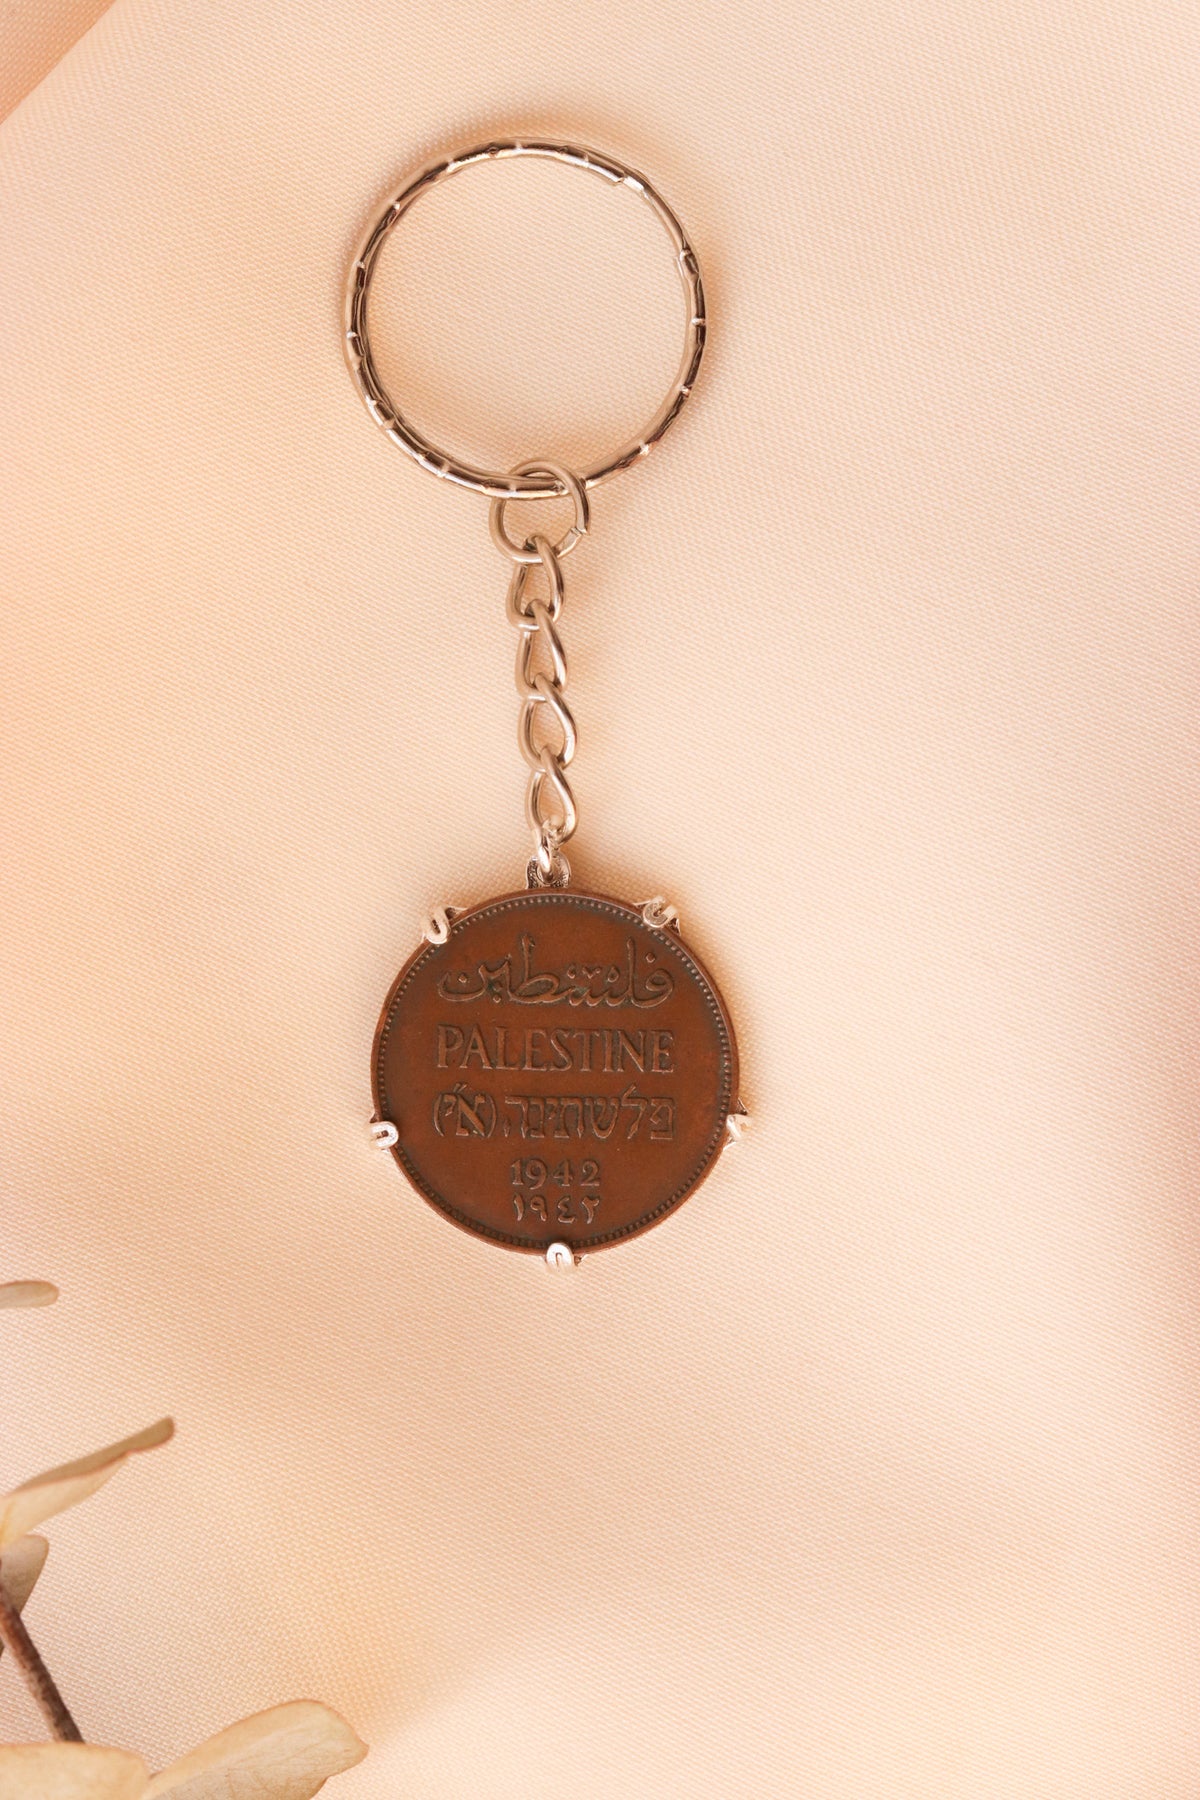 ميدالية مفاتيح العملة الفلسطينية ٢مل مع ايطار تاجي